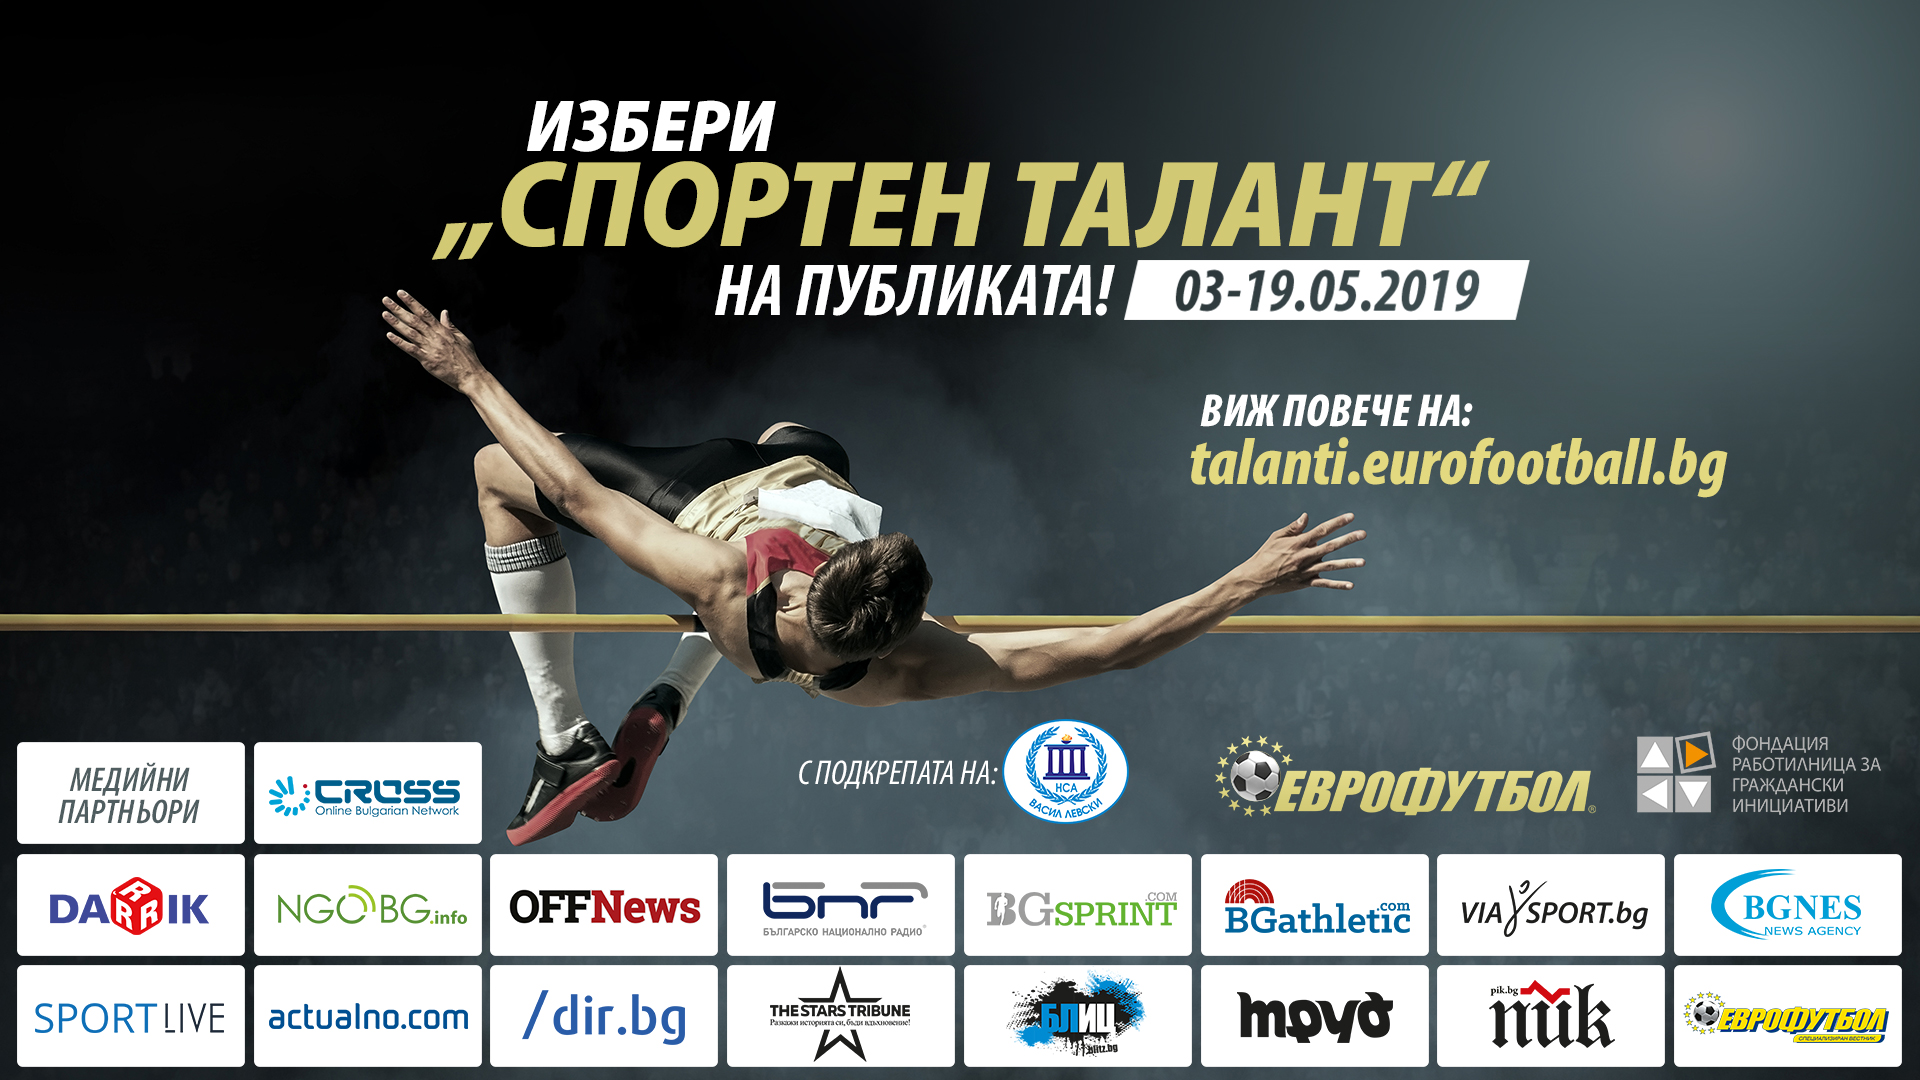 Васил Власов и Александър Сръндев в битка за „Спортен талант на публиката”